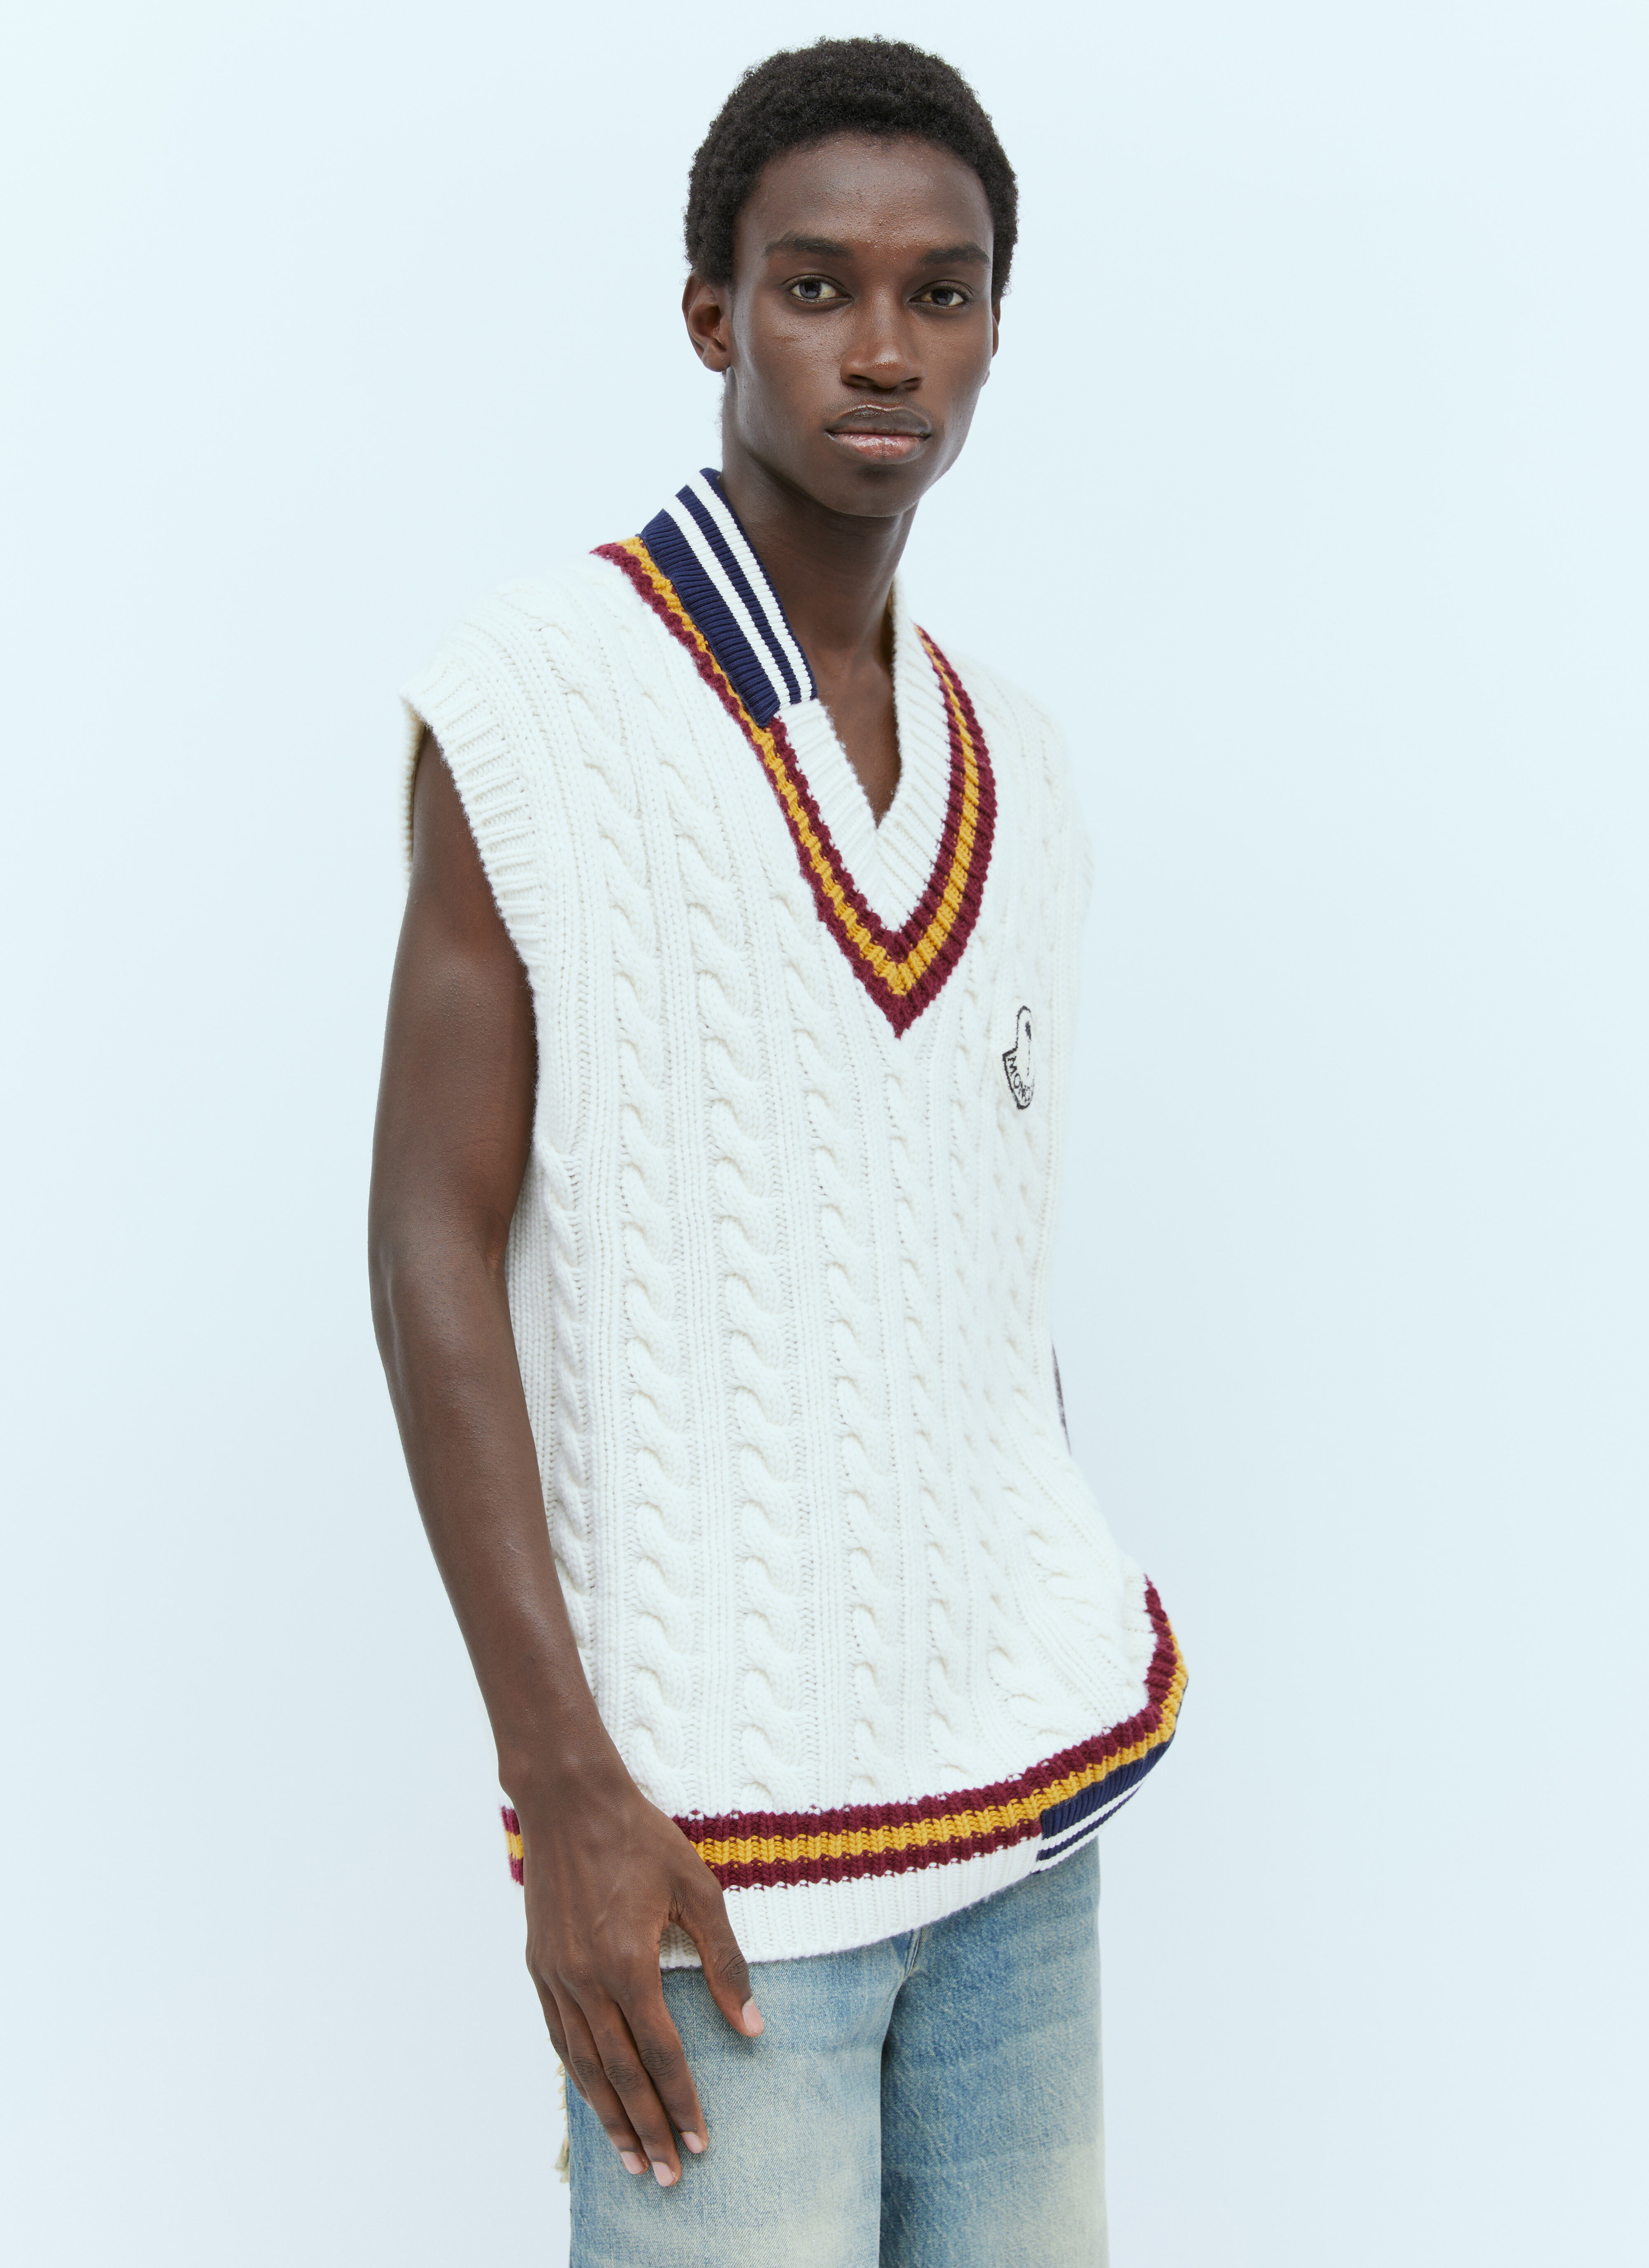 Moncler x Roc Nation designed by Jay-Z 羊毛 V 领背心 黑色 mrn0156002